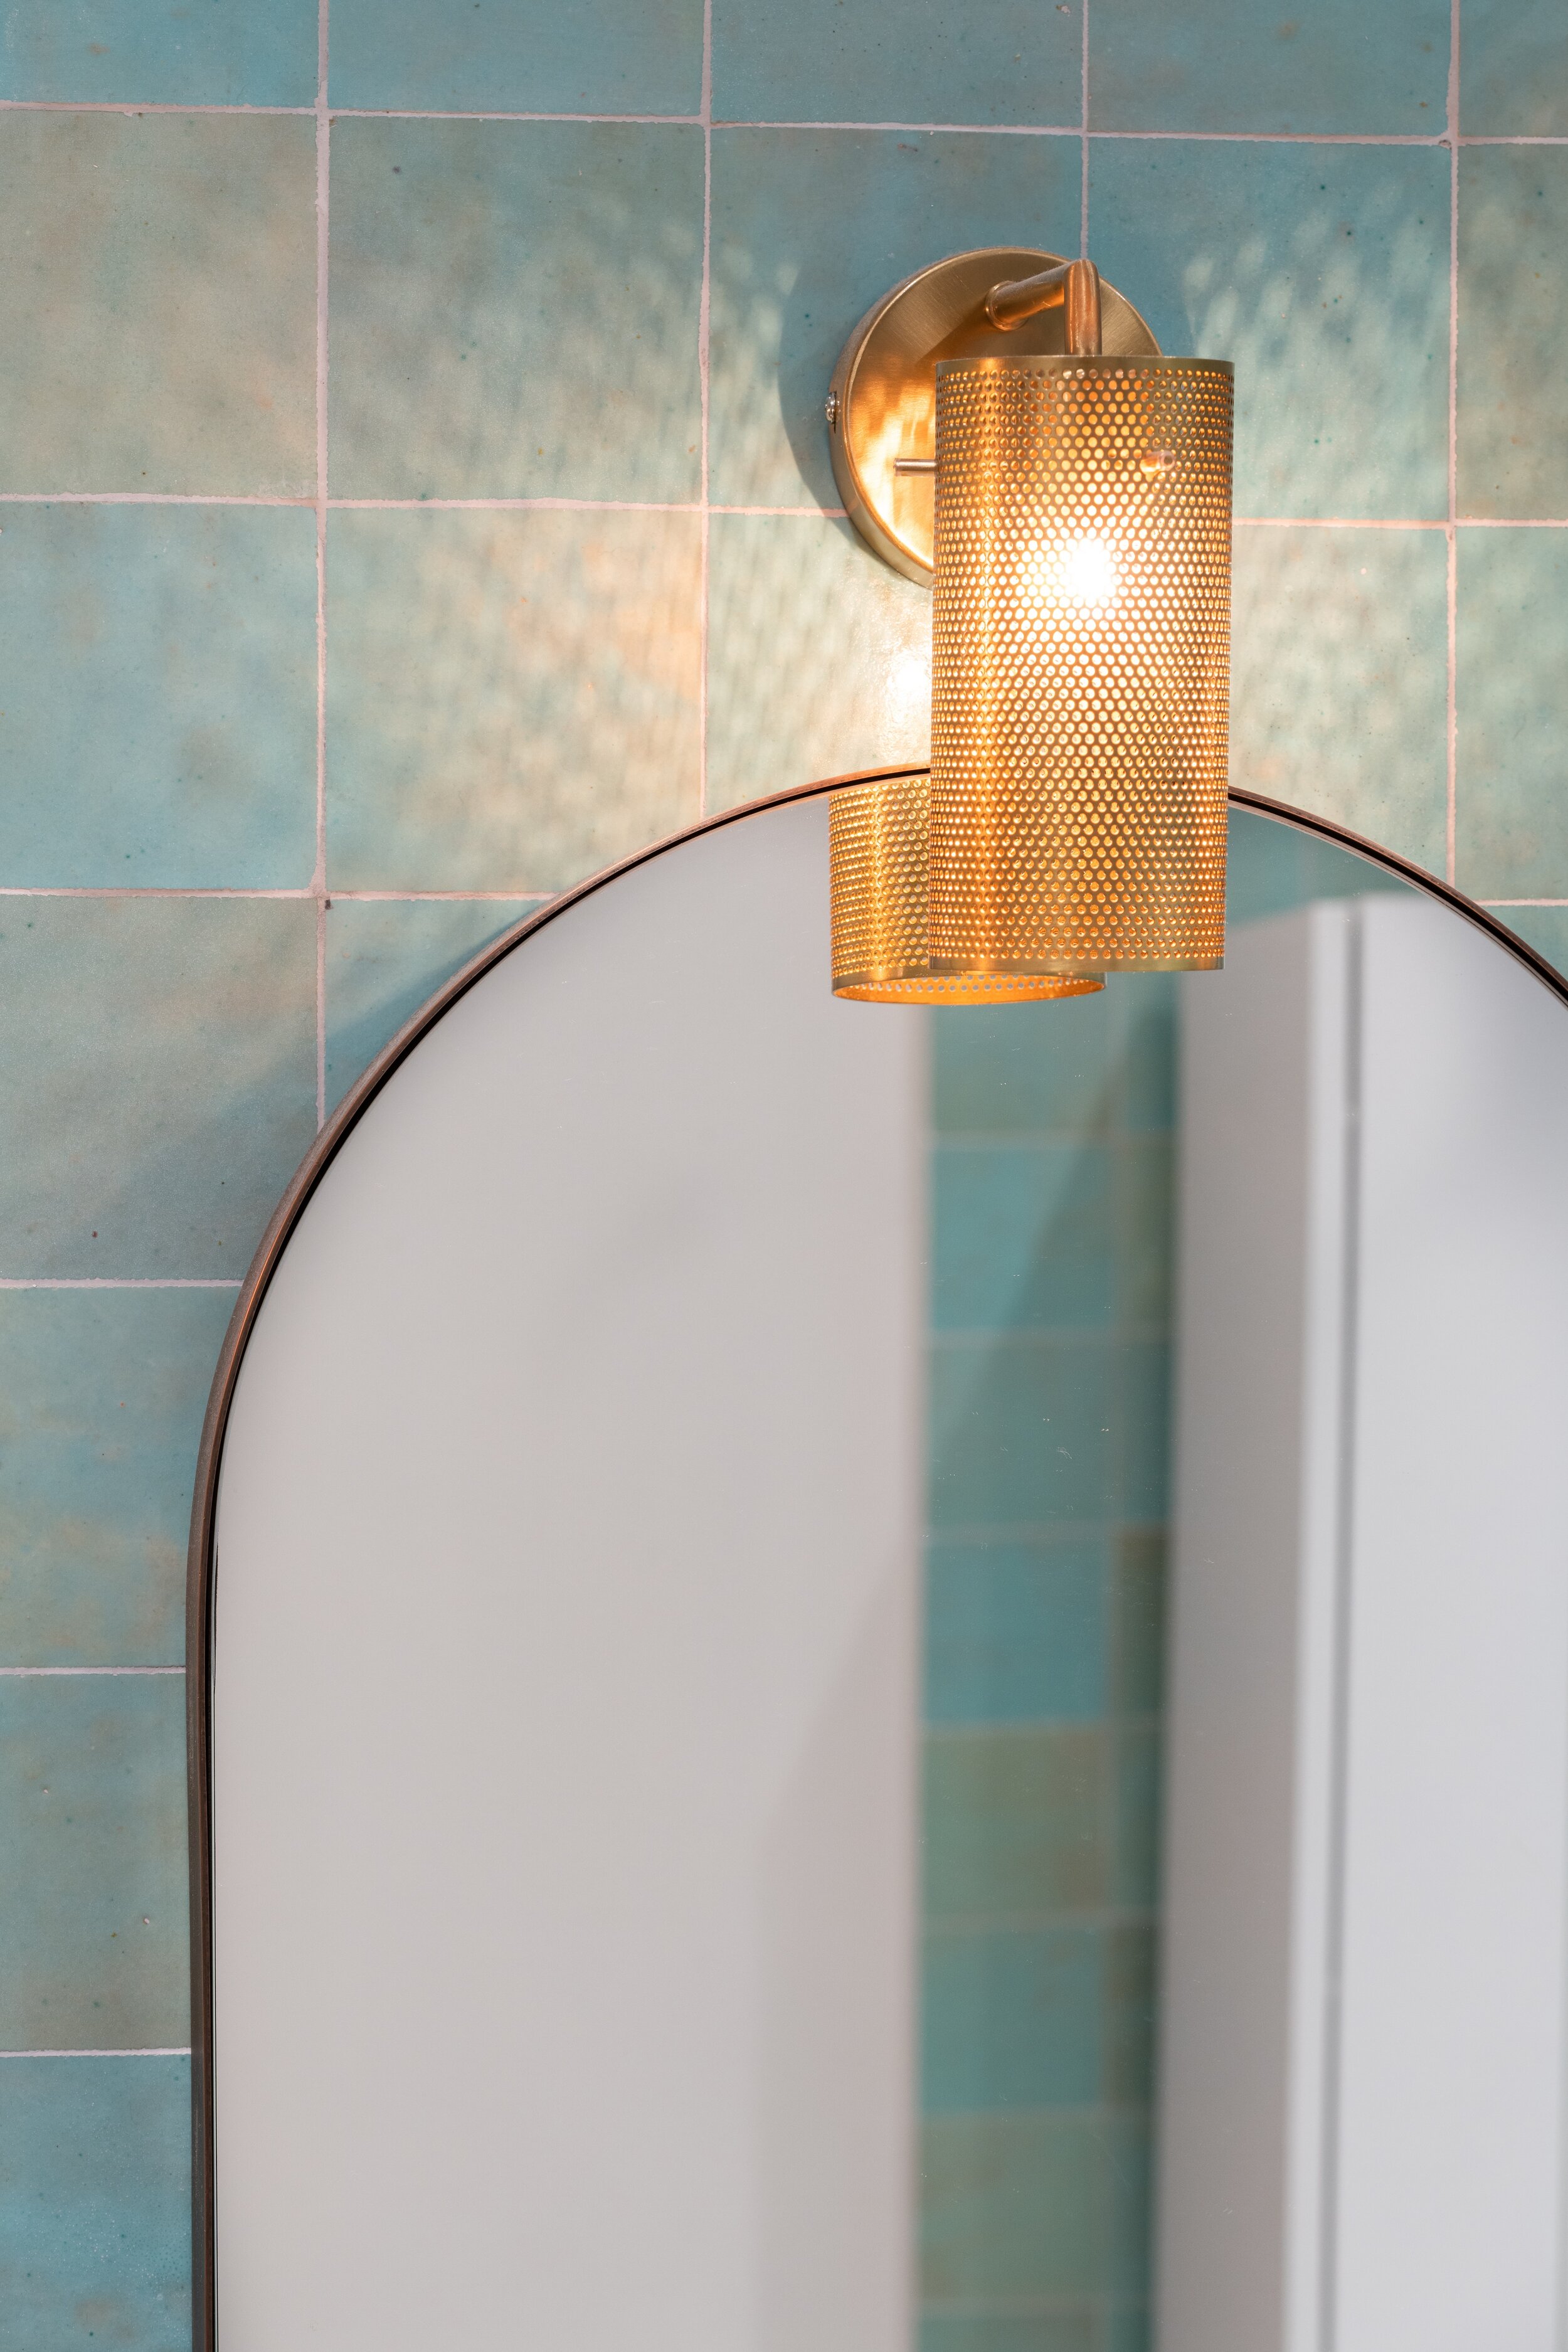 Salle de bain-zelliges-vert-miroir-decoration-interieure-architecte-paris-détail-miroir doré.jpg